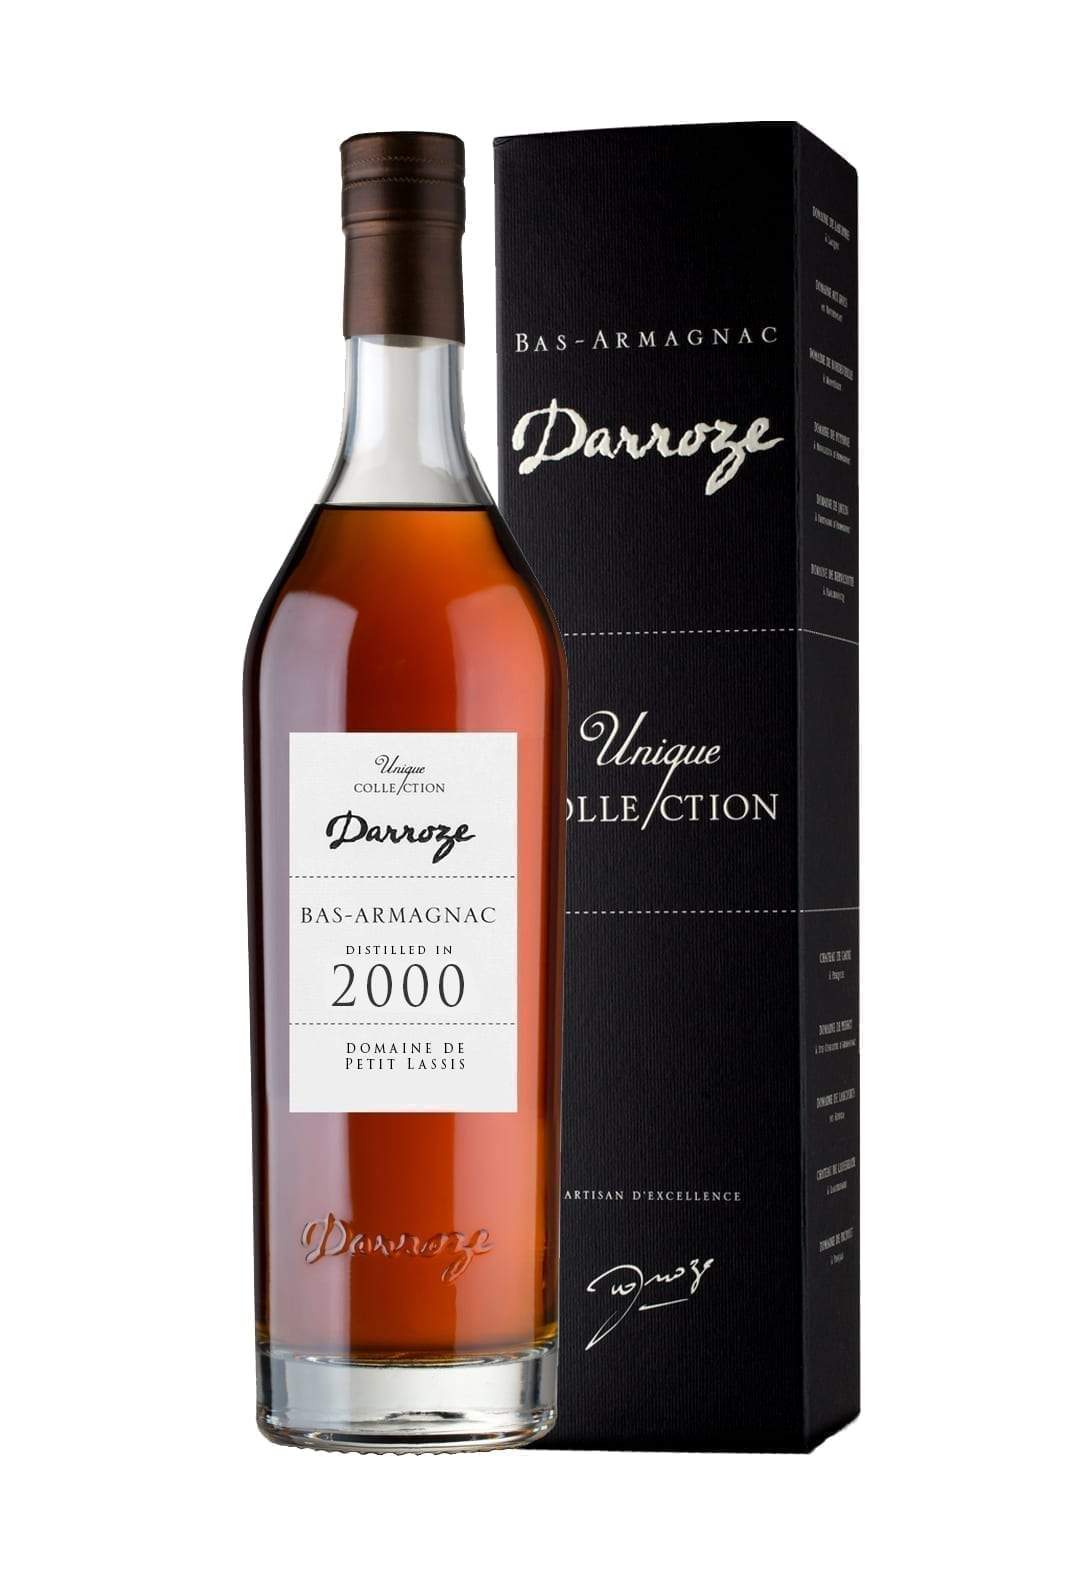 Darroze 2000 Domaine de Petit Lassis Armagnac 48.6% 700ml | Brandy | Shop online at Spirits of France